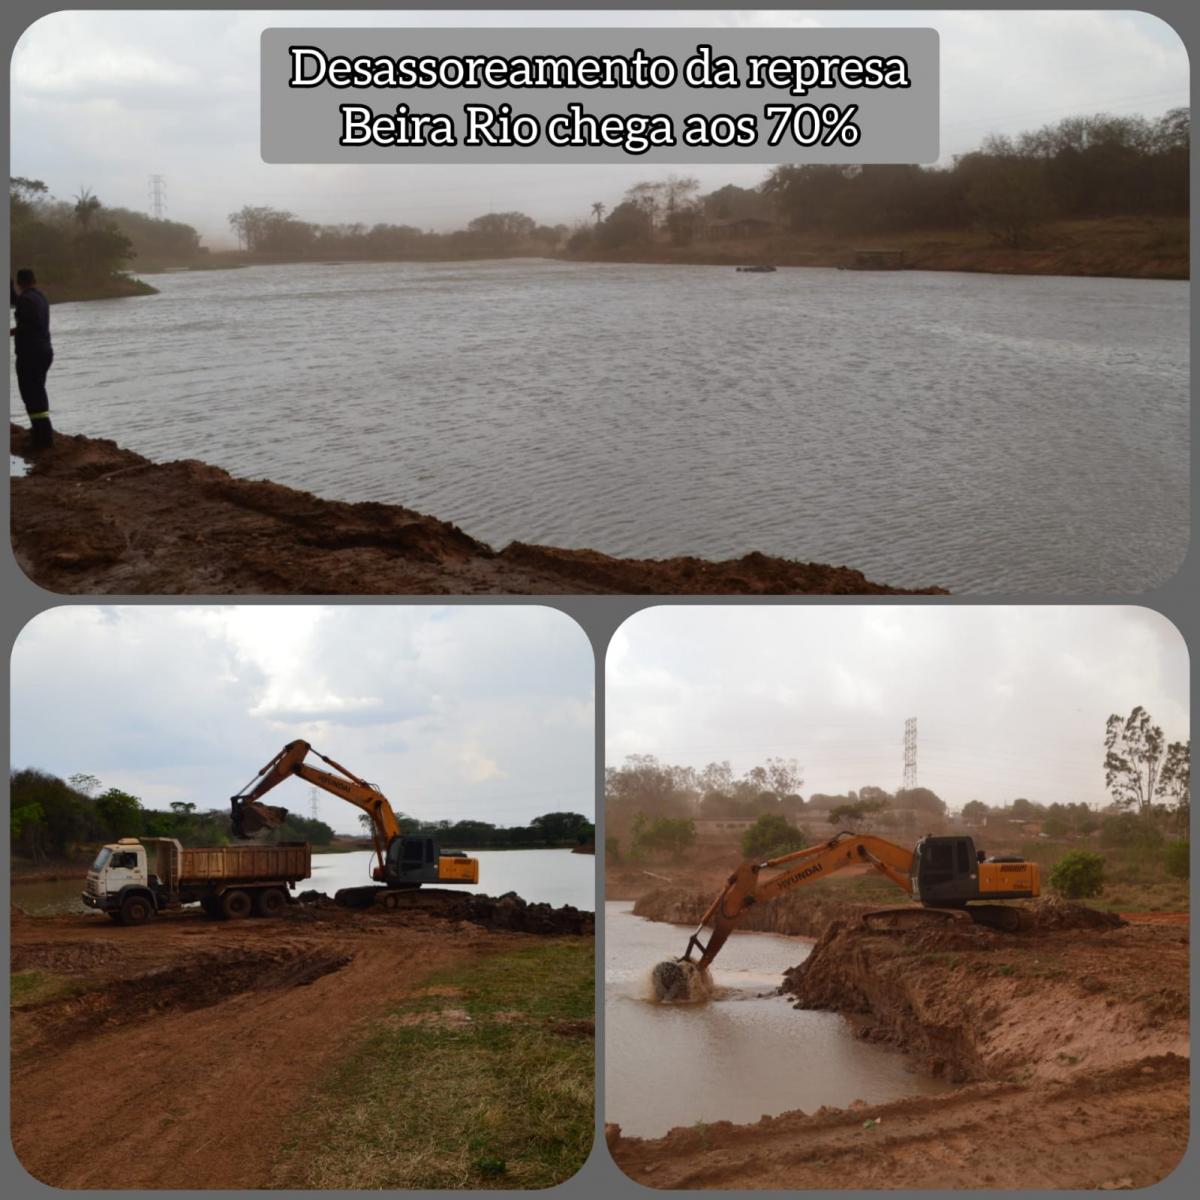 Obra de desassoreamento da represa Beira Rio chega aos 70%